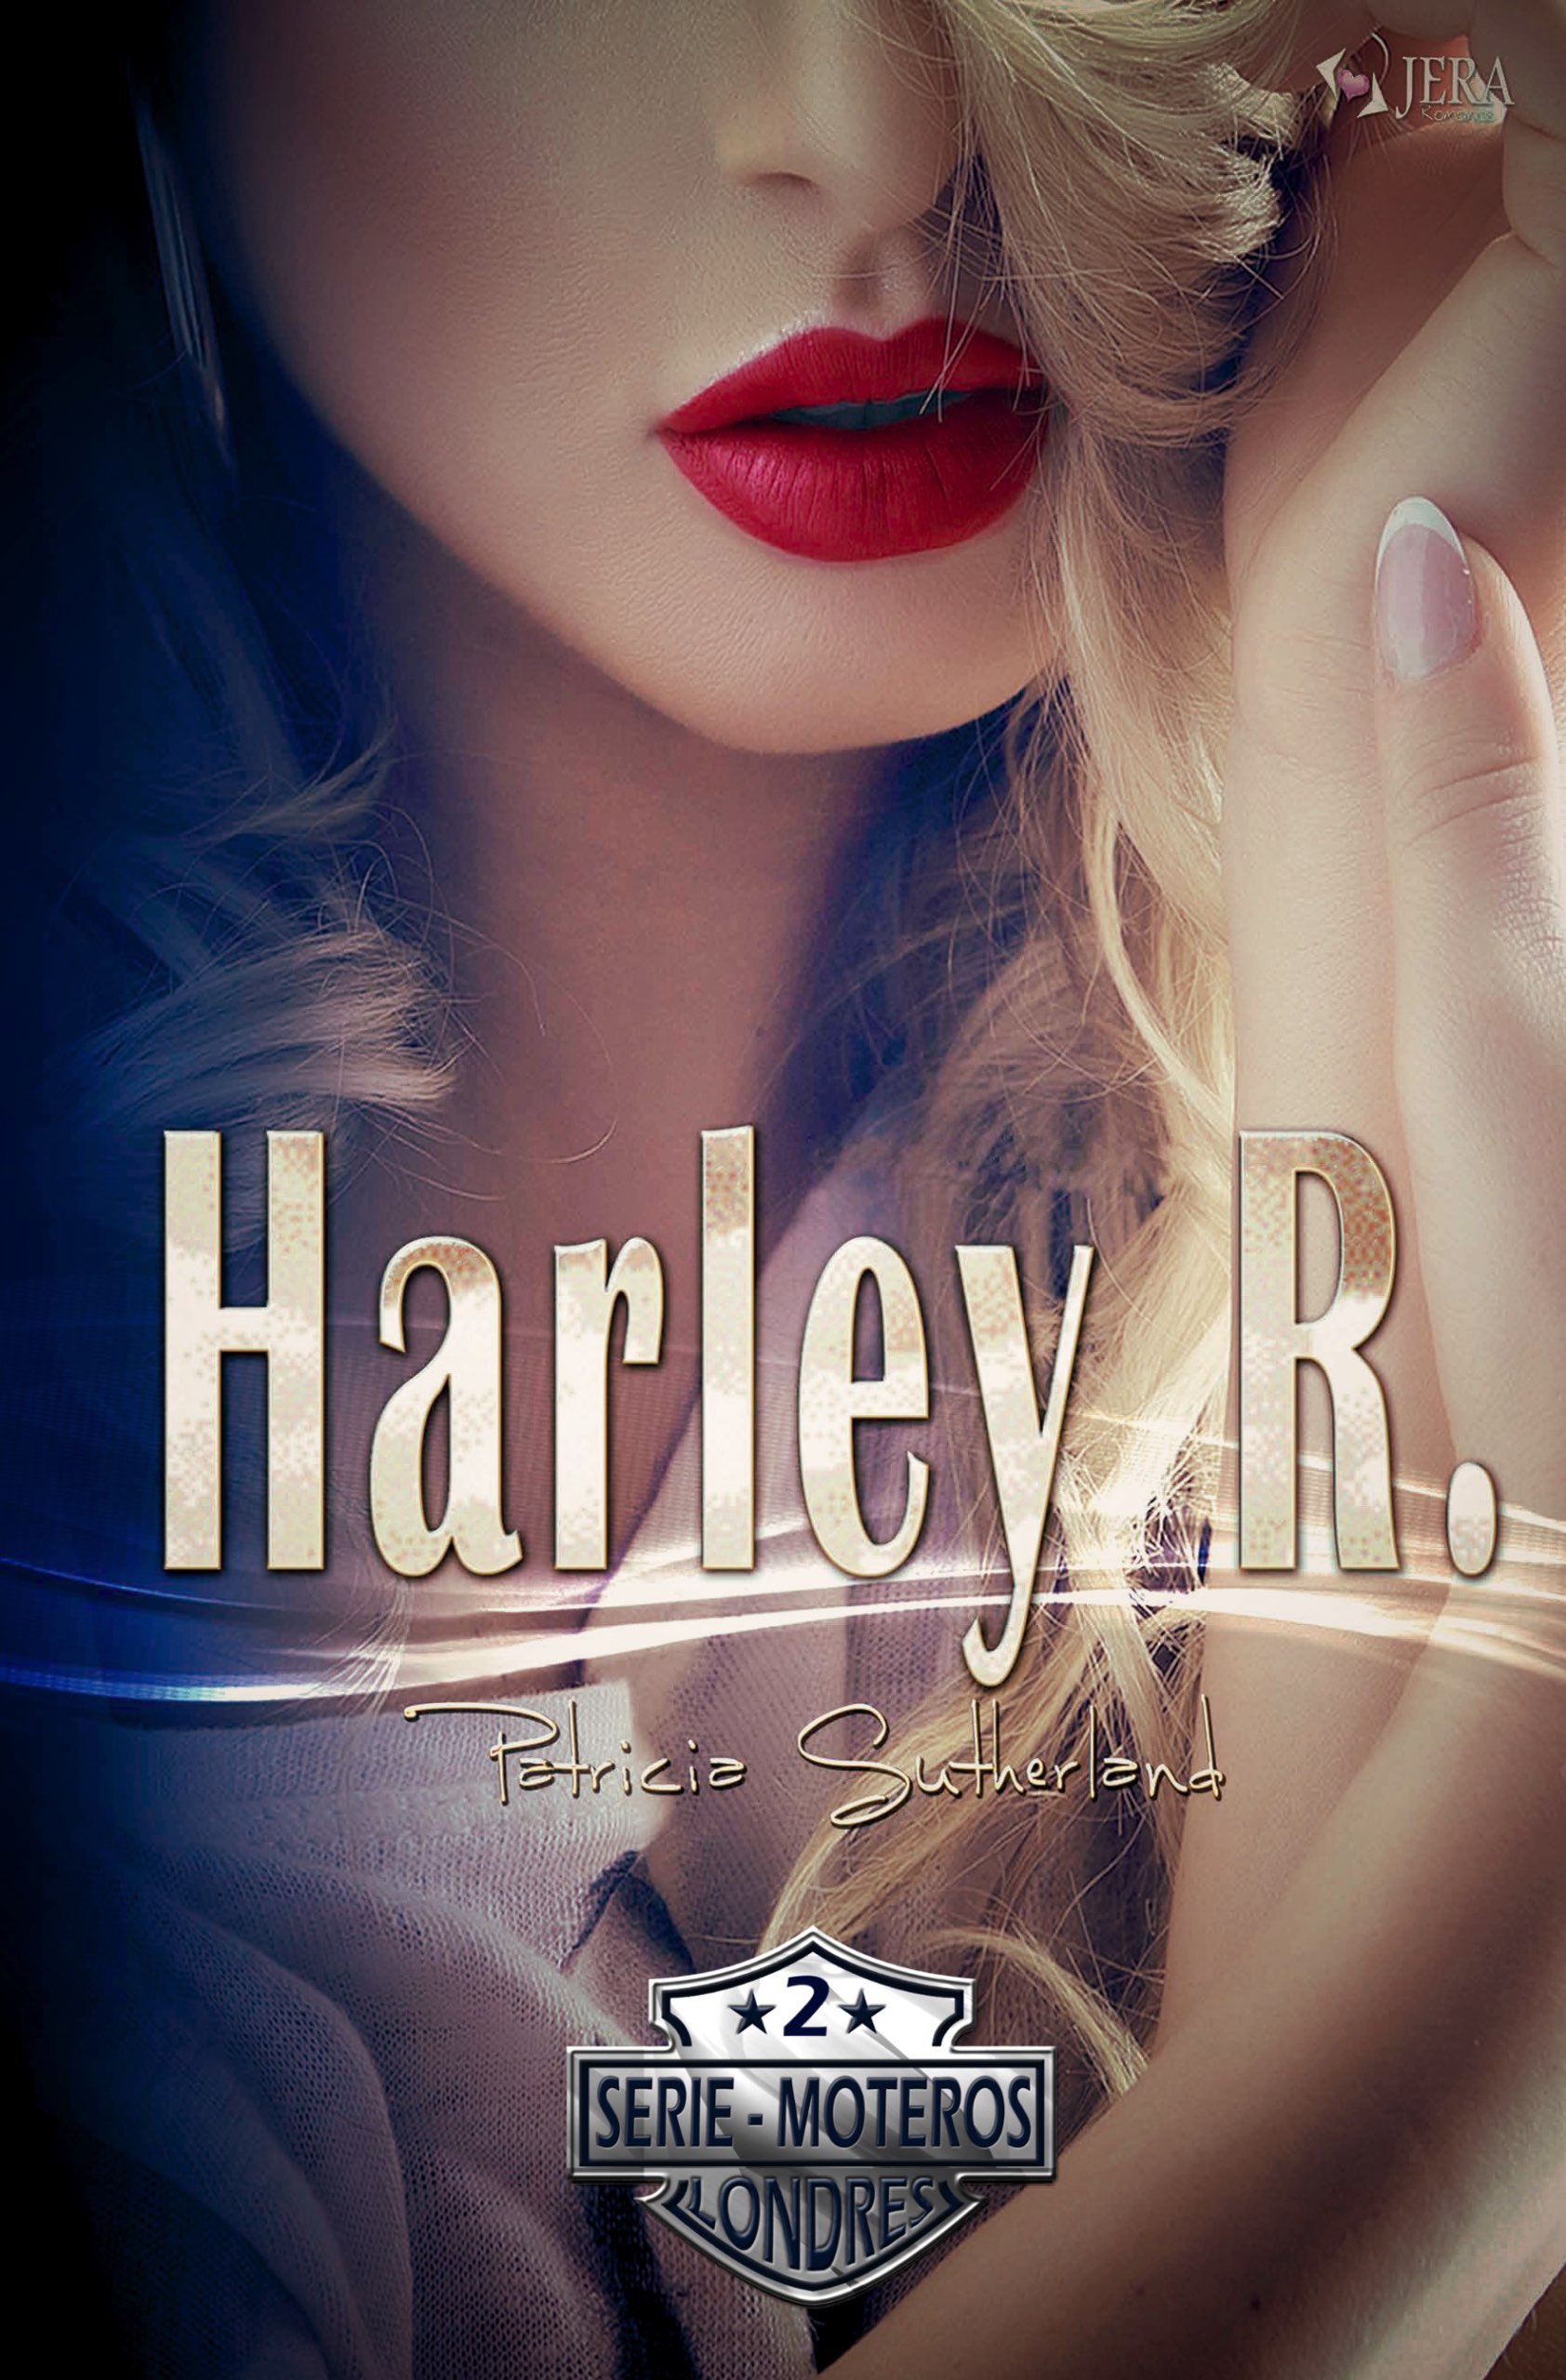 Harley R. (Nueva Portada) - Serie Moteros # 2